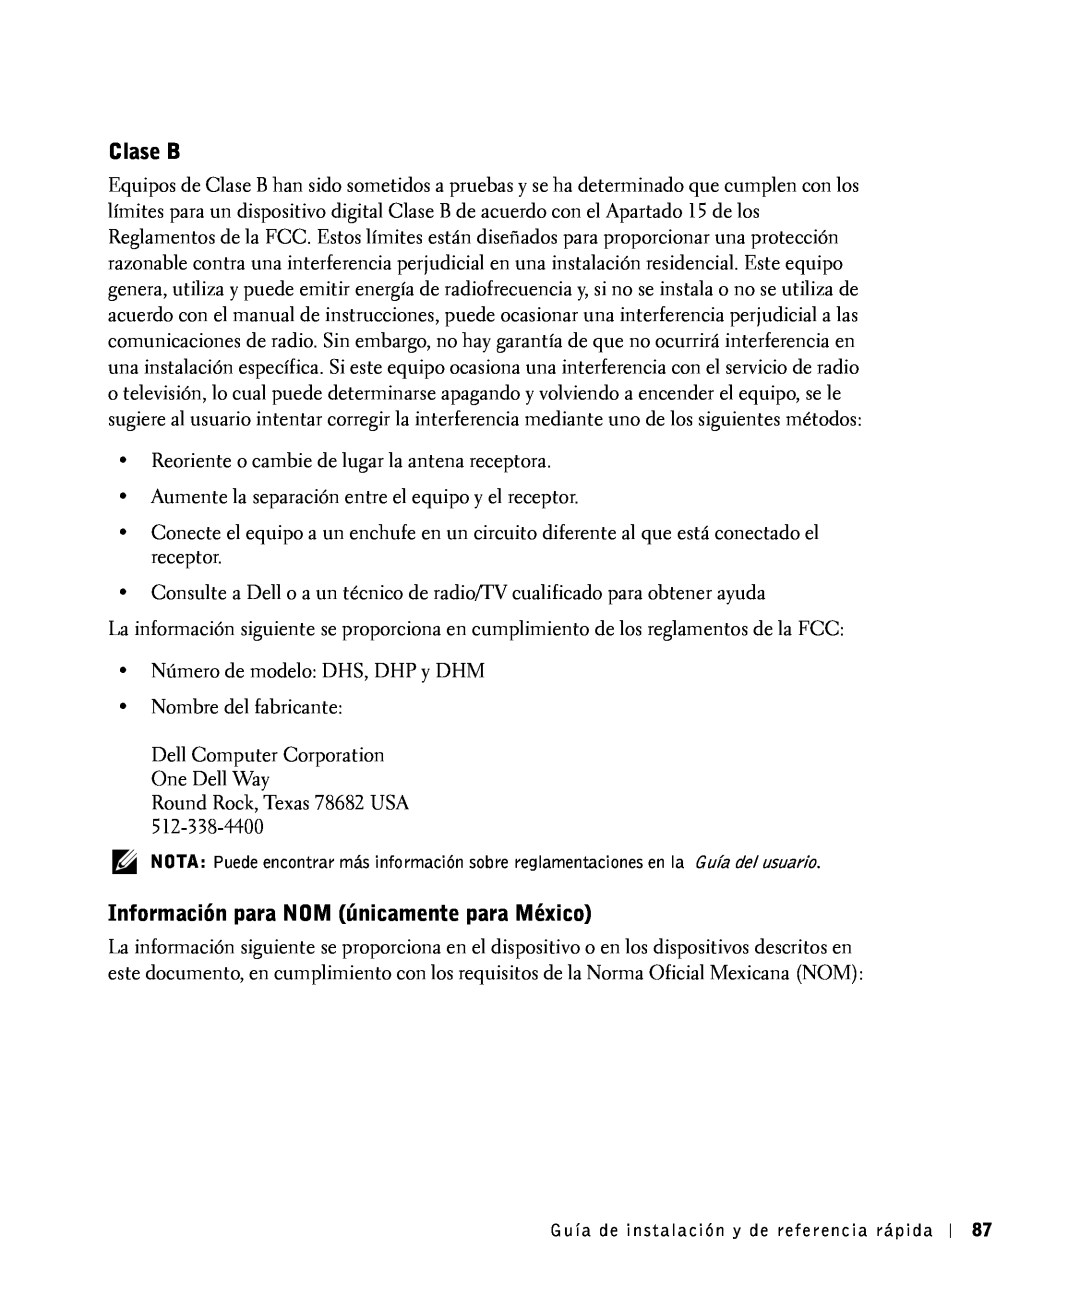 Dell 81FTK manual Clase B, Información para NOM únicamente para México, Reoriente o cambie de lugar la antena receptora 